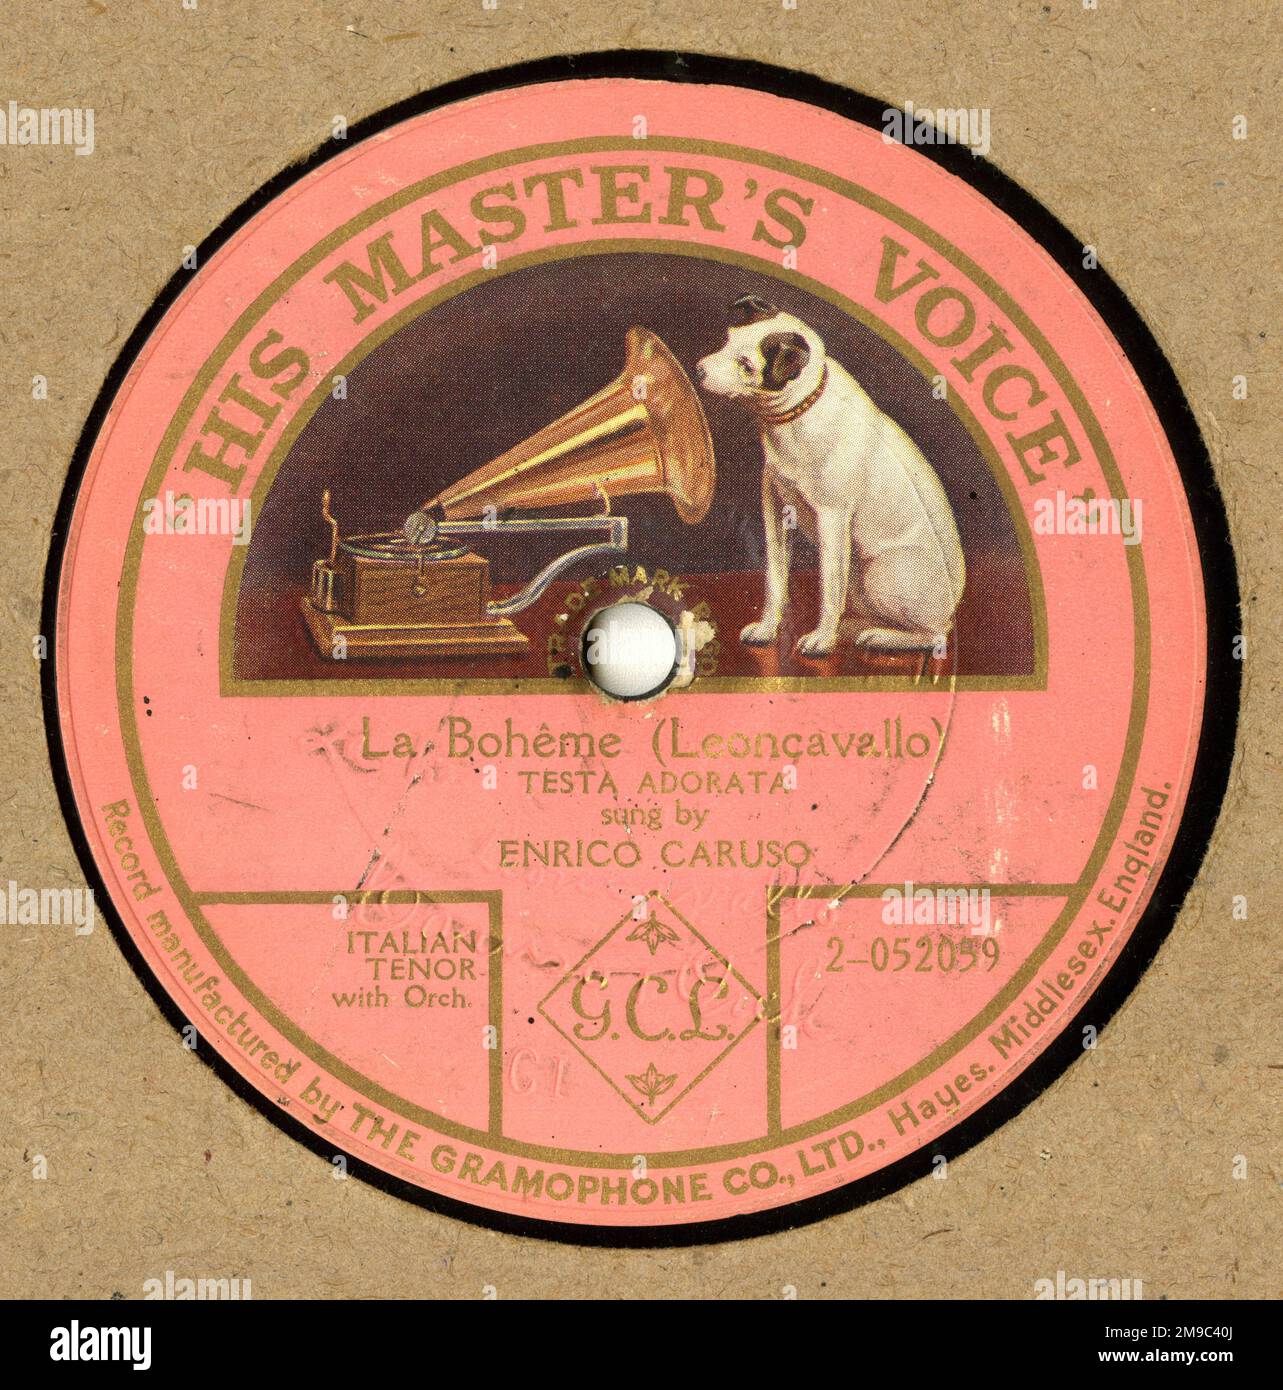 Enrico Caruso, opera singer, Testa Adorata from La Boheme by Leoncavallo, HMV record label, 78 rpm, early single sided shellac record Stock Photo